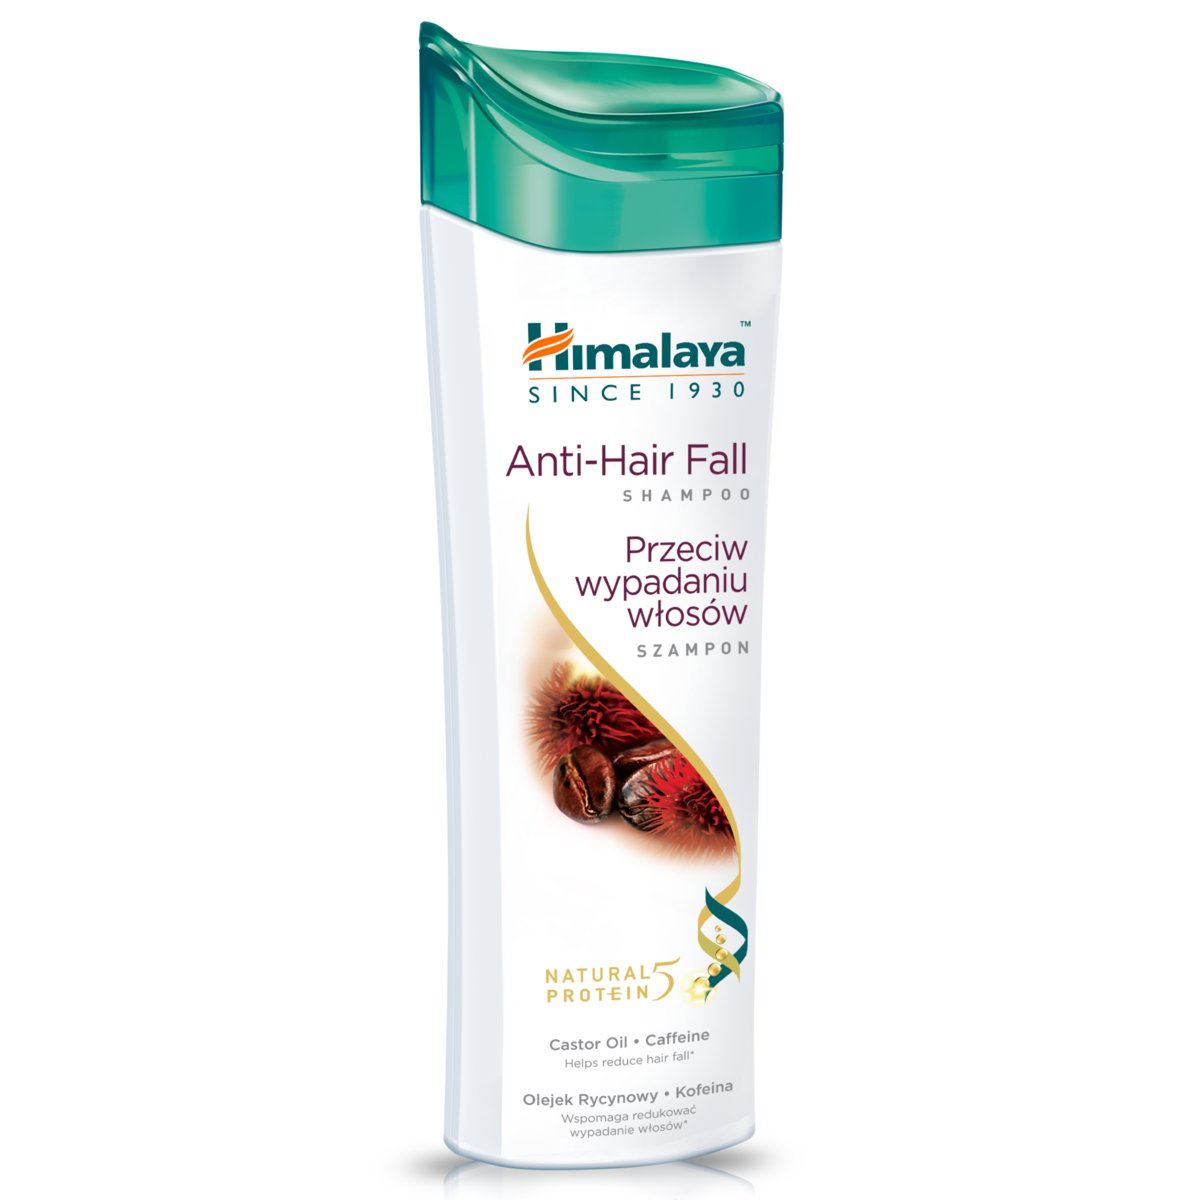 himalaya herbals szampon proteinowy przeciw wypadaniu włosów opinie